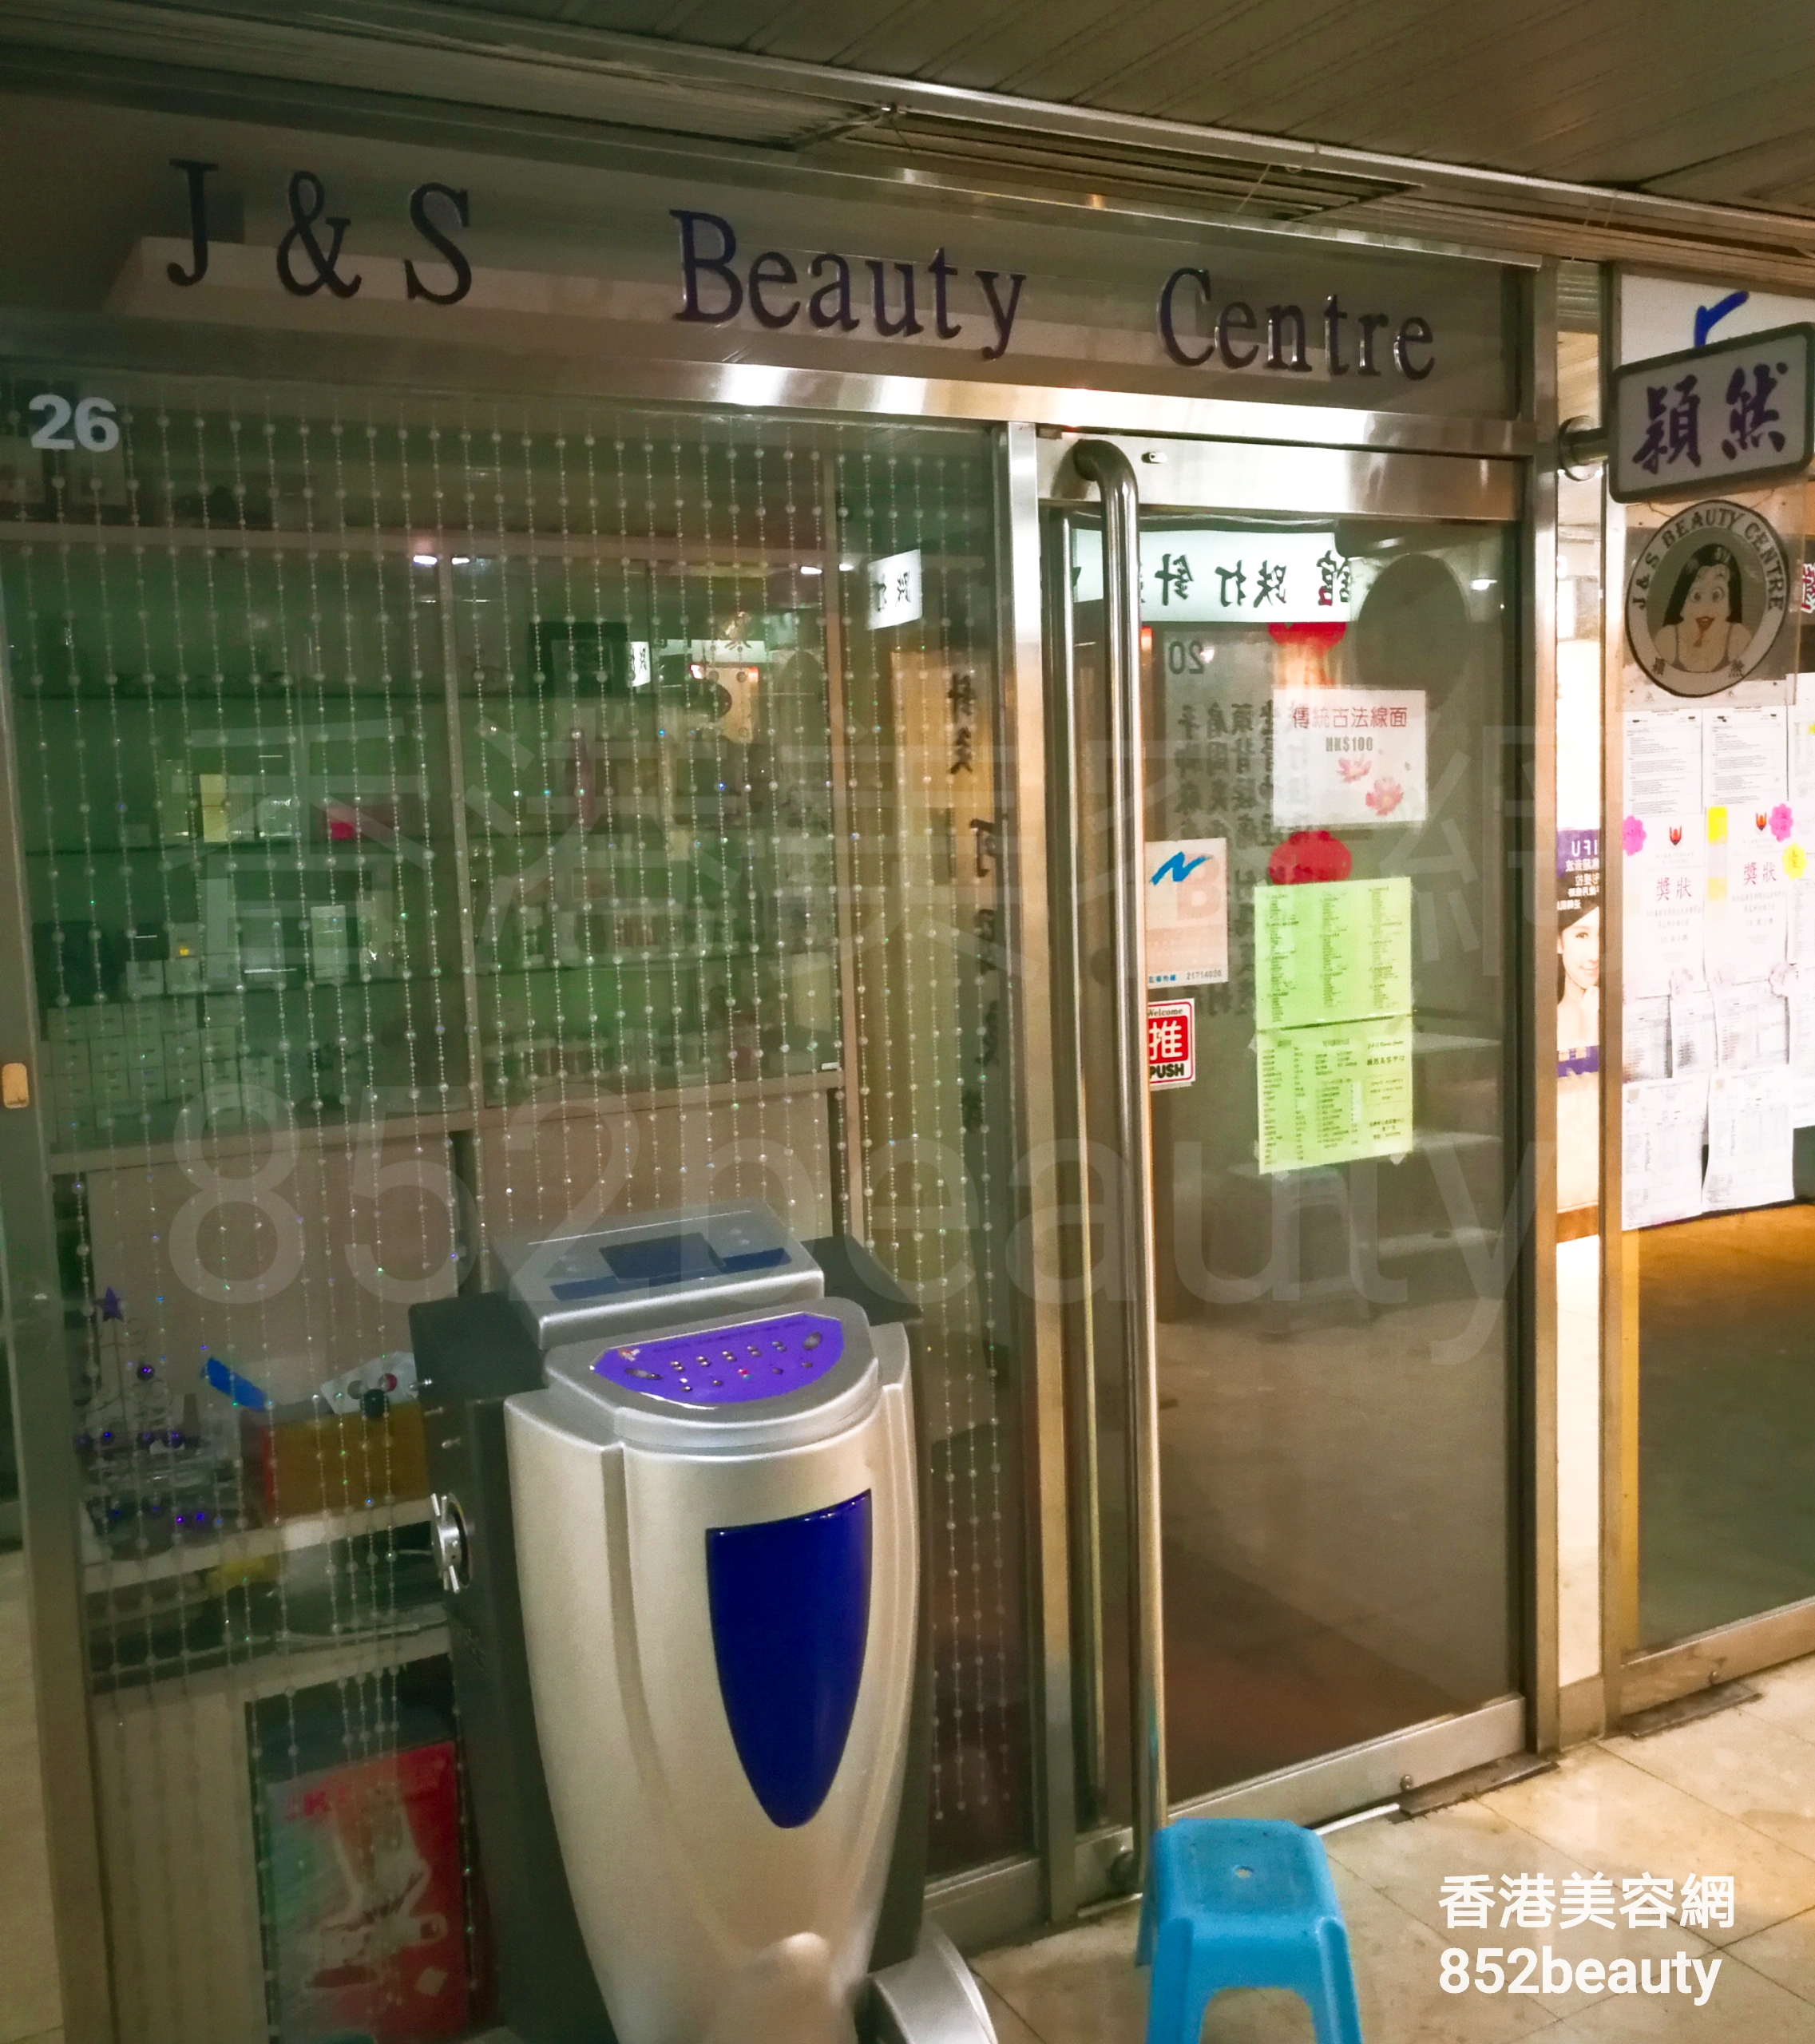 修眉/眼睫毛: J&S Beauty Centre 穎然美容中心